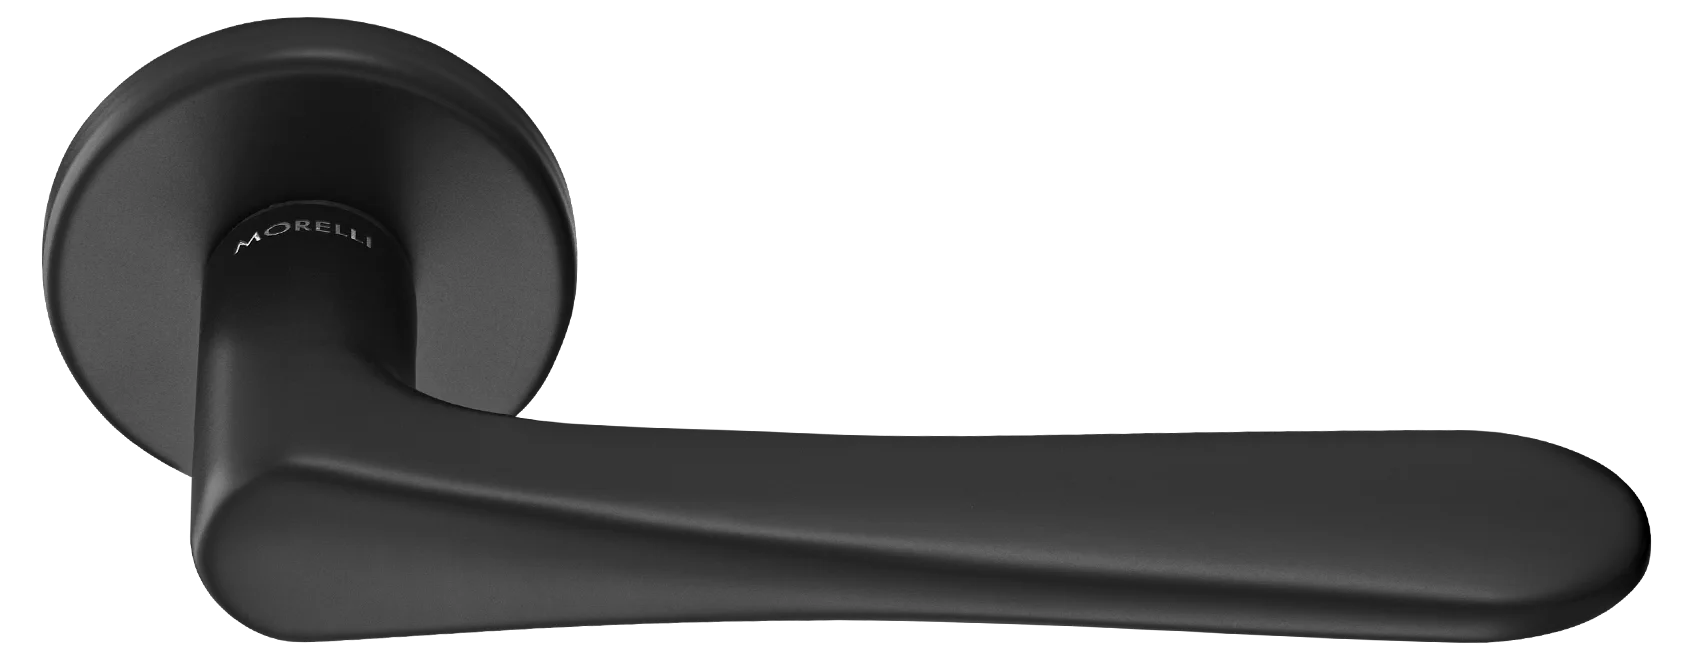 AULA R5 NERO, ручка дверная на розетке 7мм, цвет -  черный фото купить Южно-Сахалинск